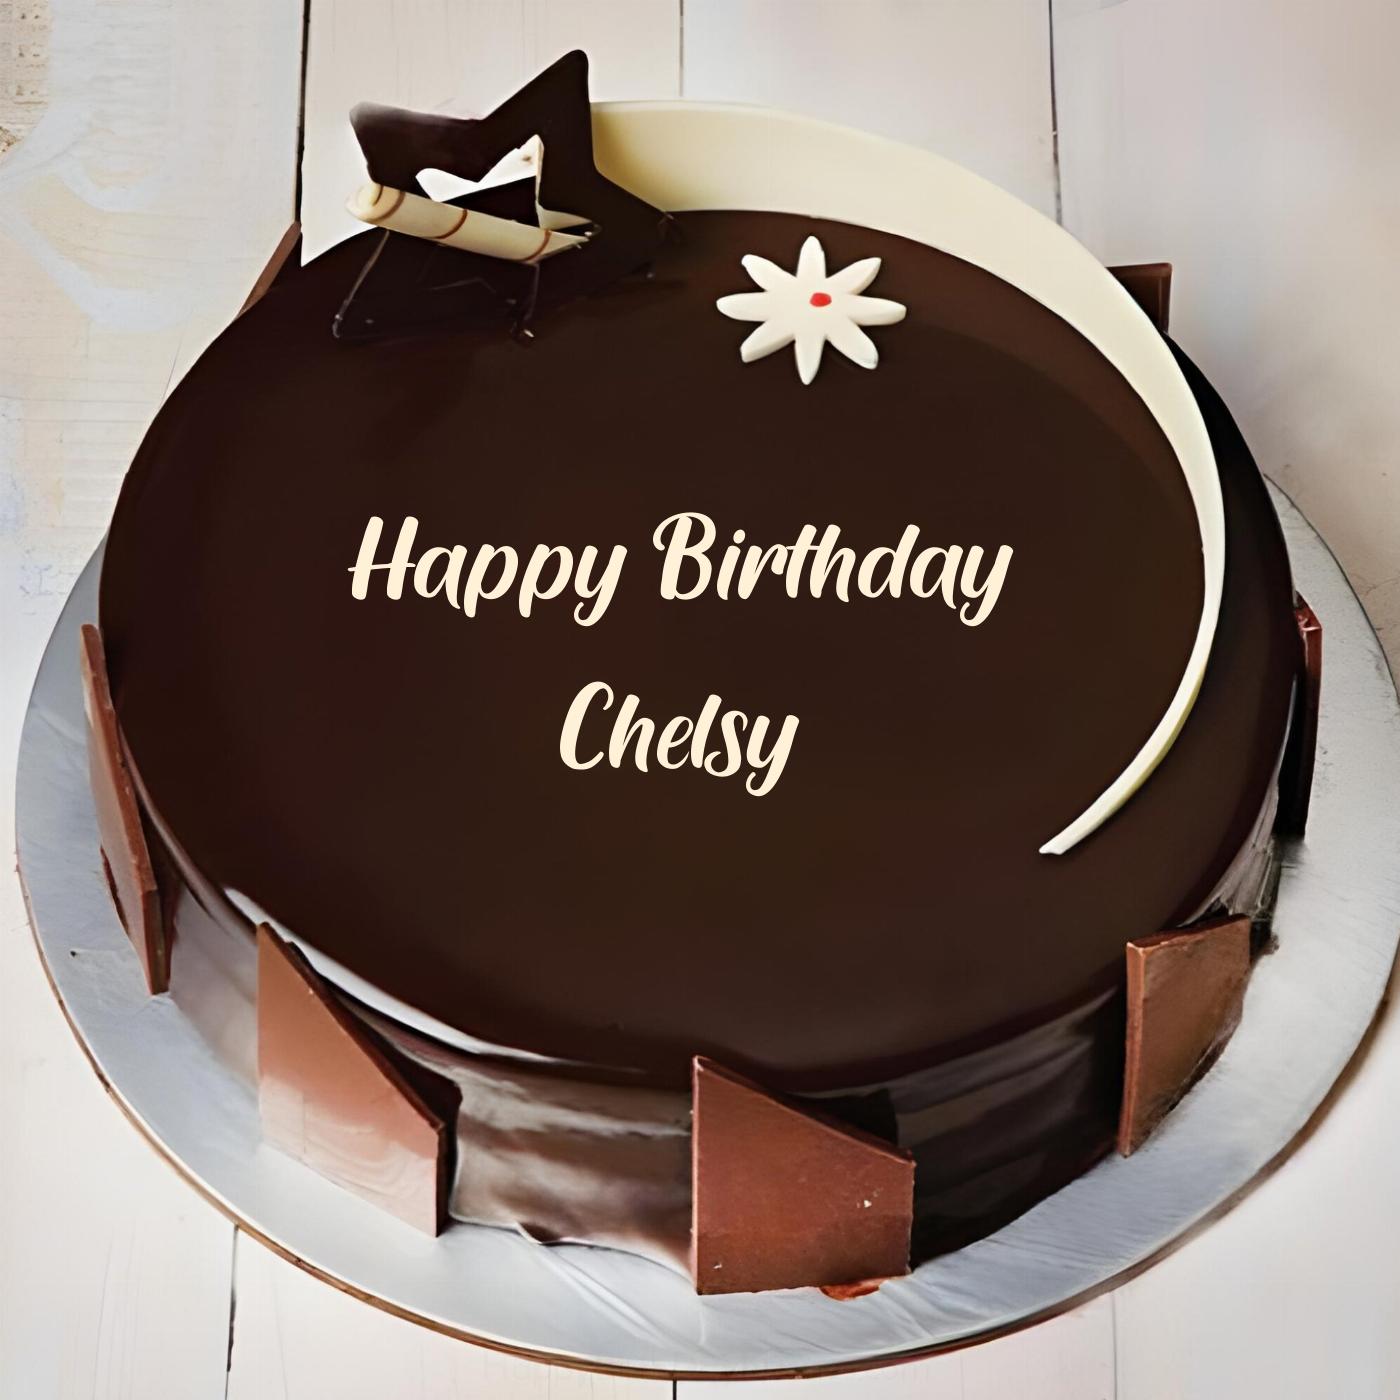 Happy Birthday Chelsy Chocolate Star Cake